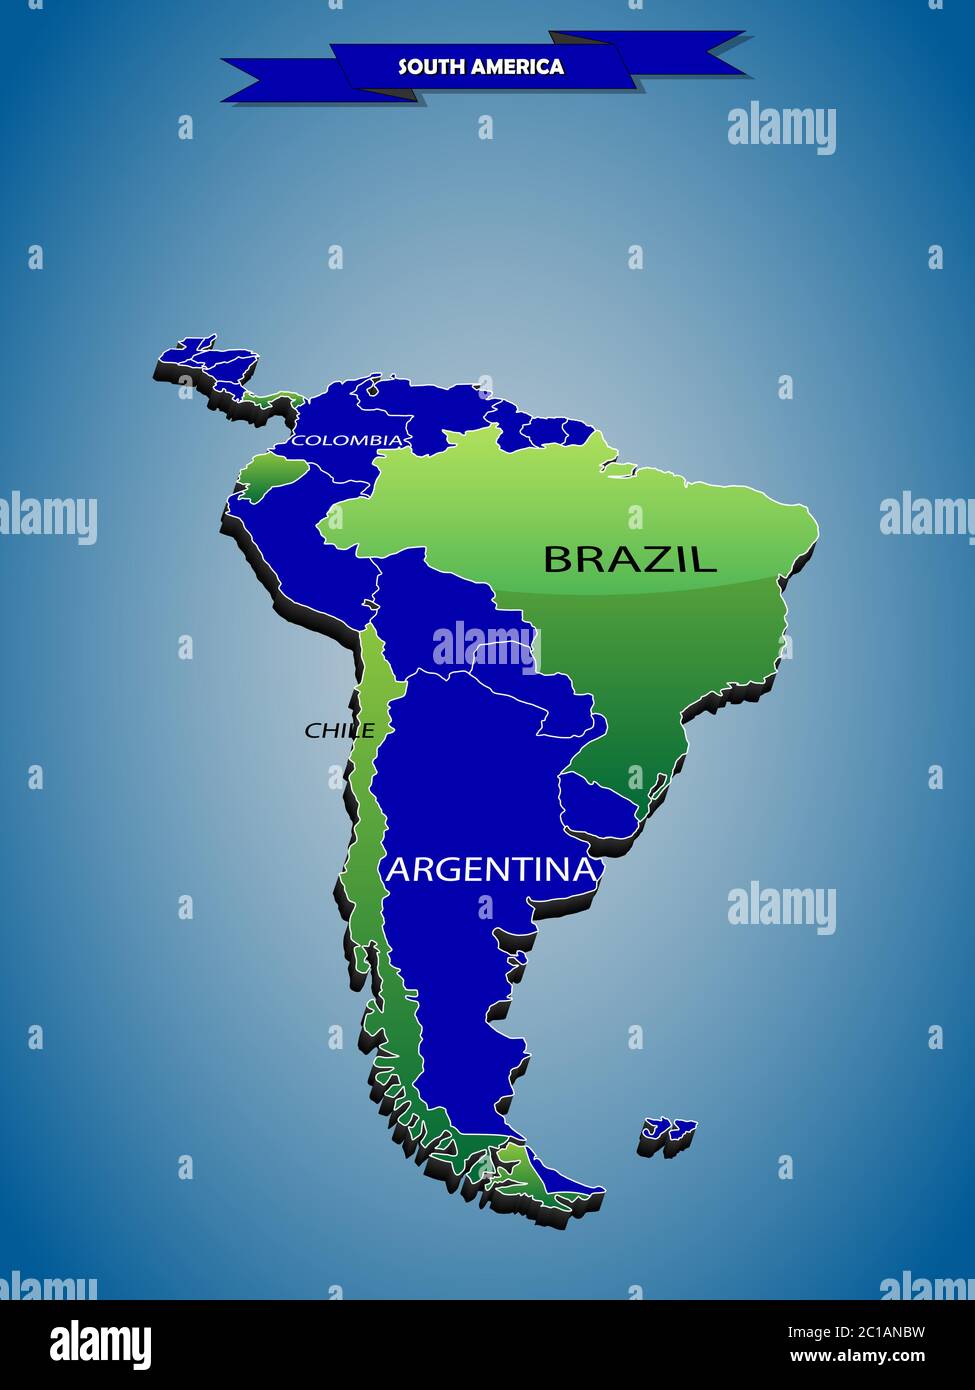 3 carte politique en dimension info-graphiques de l'Amérique du Sud Illustration de Vecteur